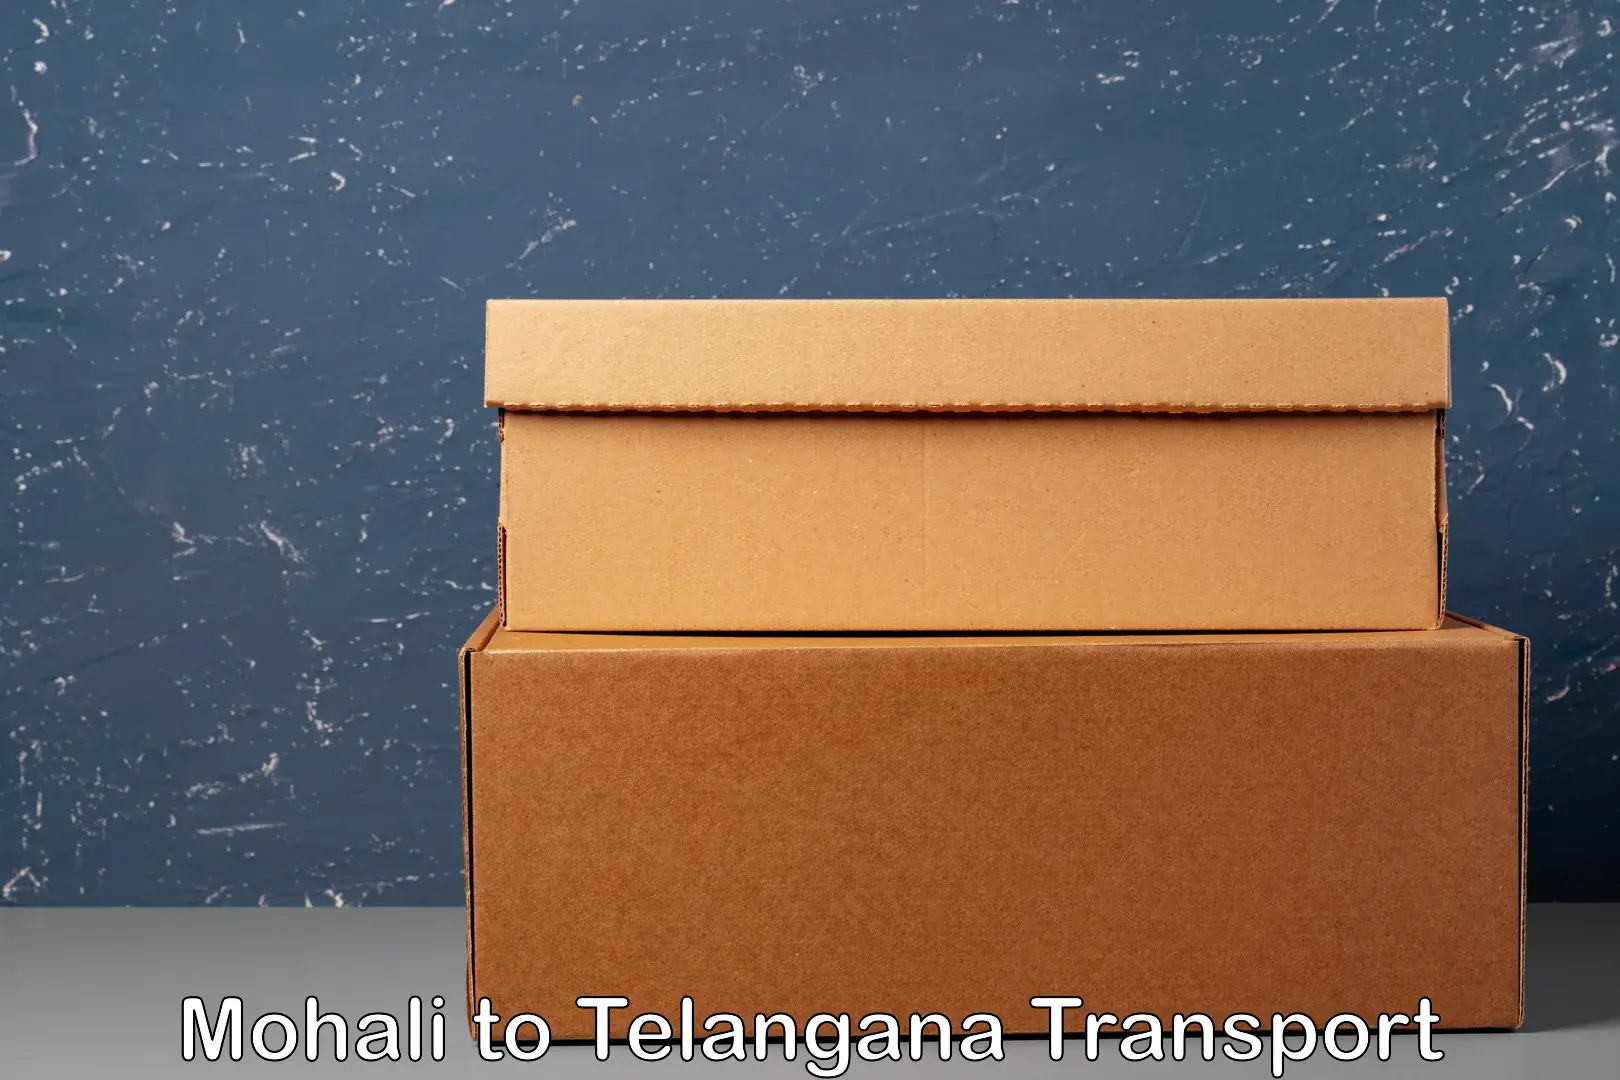 Daily transport service Mohali to Yellandu